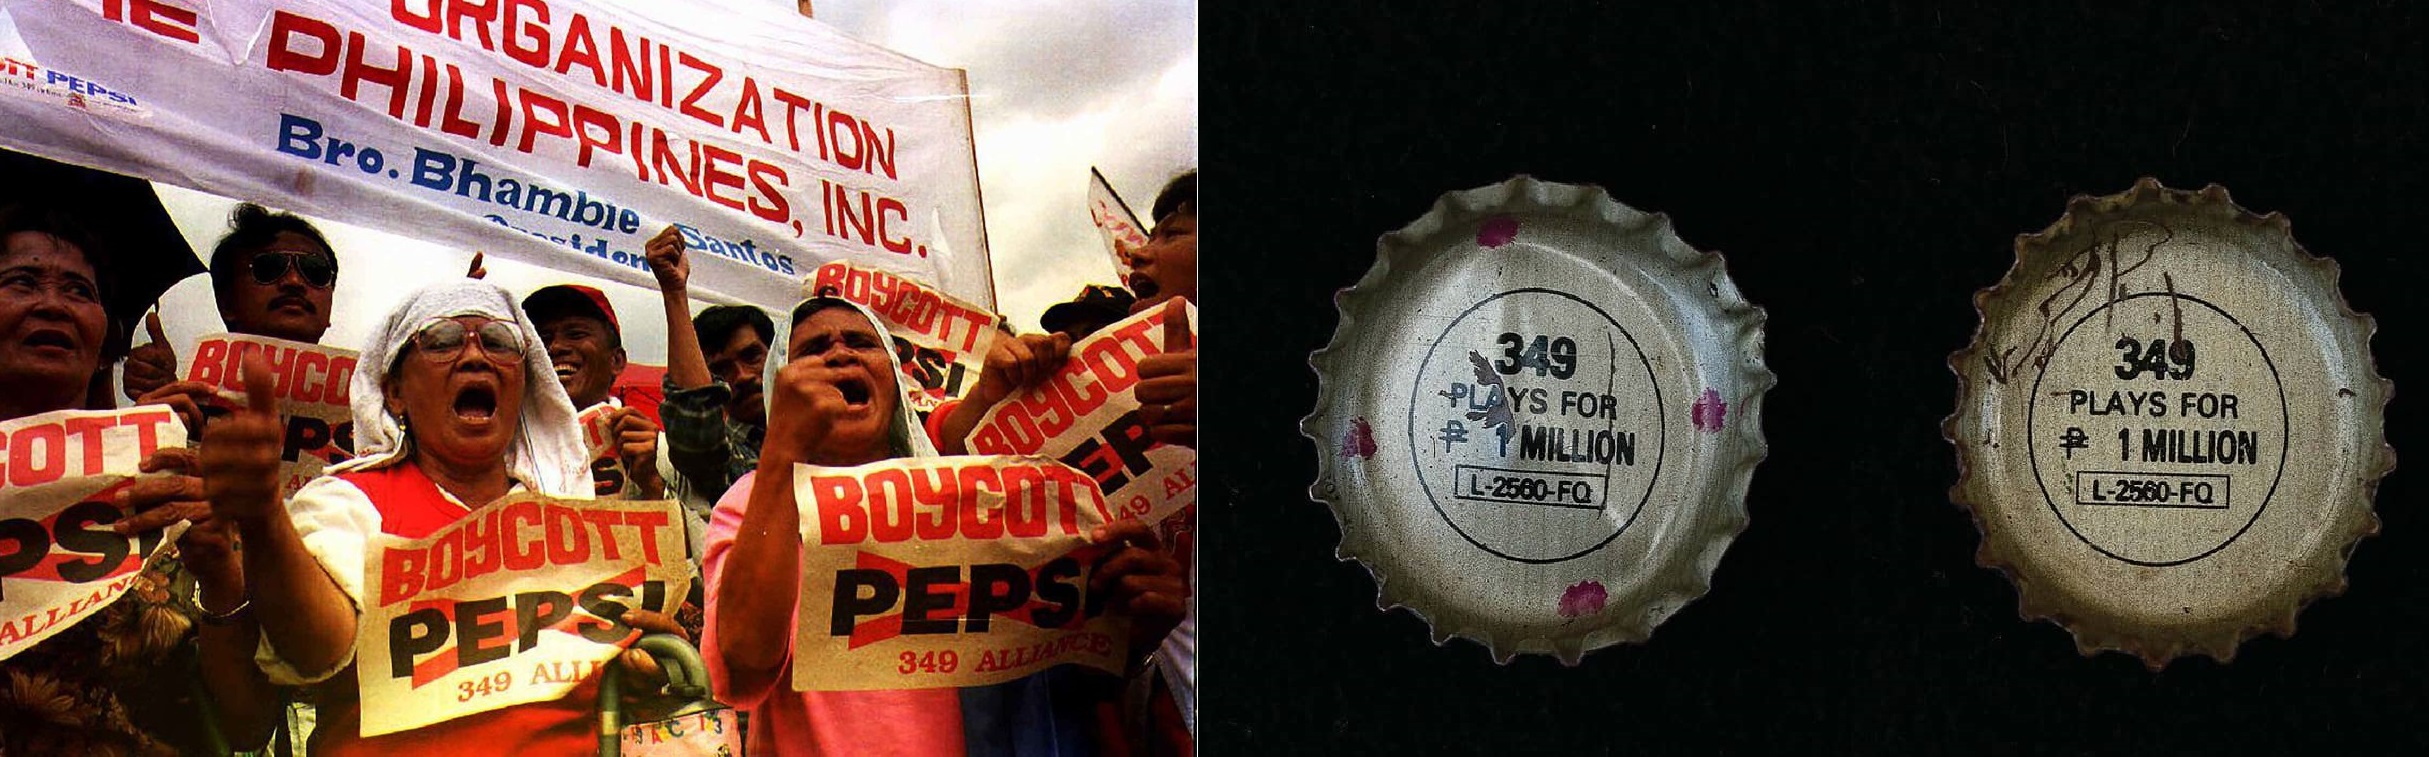 Πως μια διαφημιστική καμπάνια με καπάκια κατέληξε στο χειρότερο φιάσκο του μάρκετινγκ. Το λάθος της Pepsi-Cola Philippines